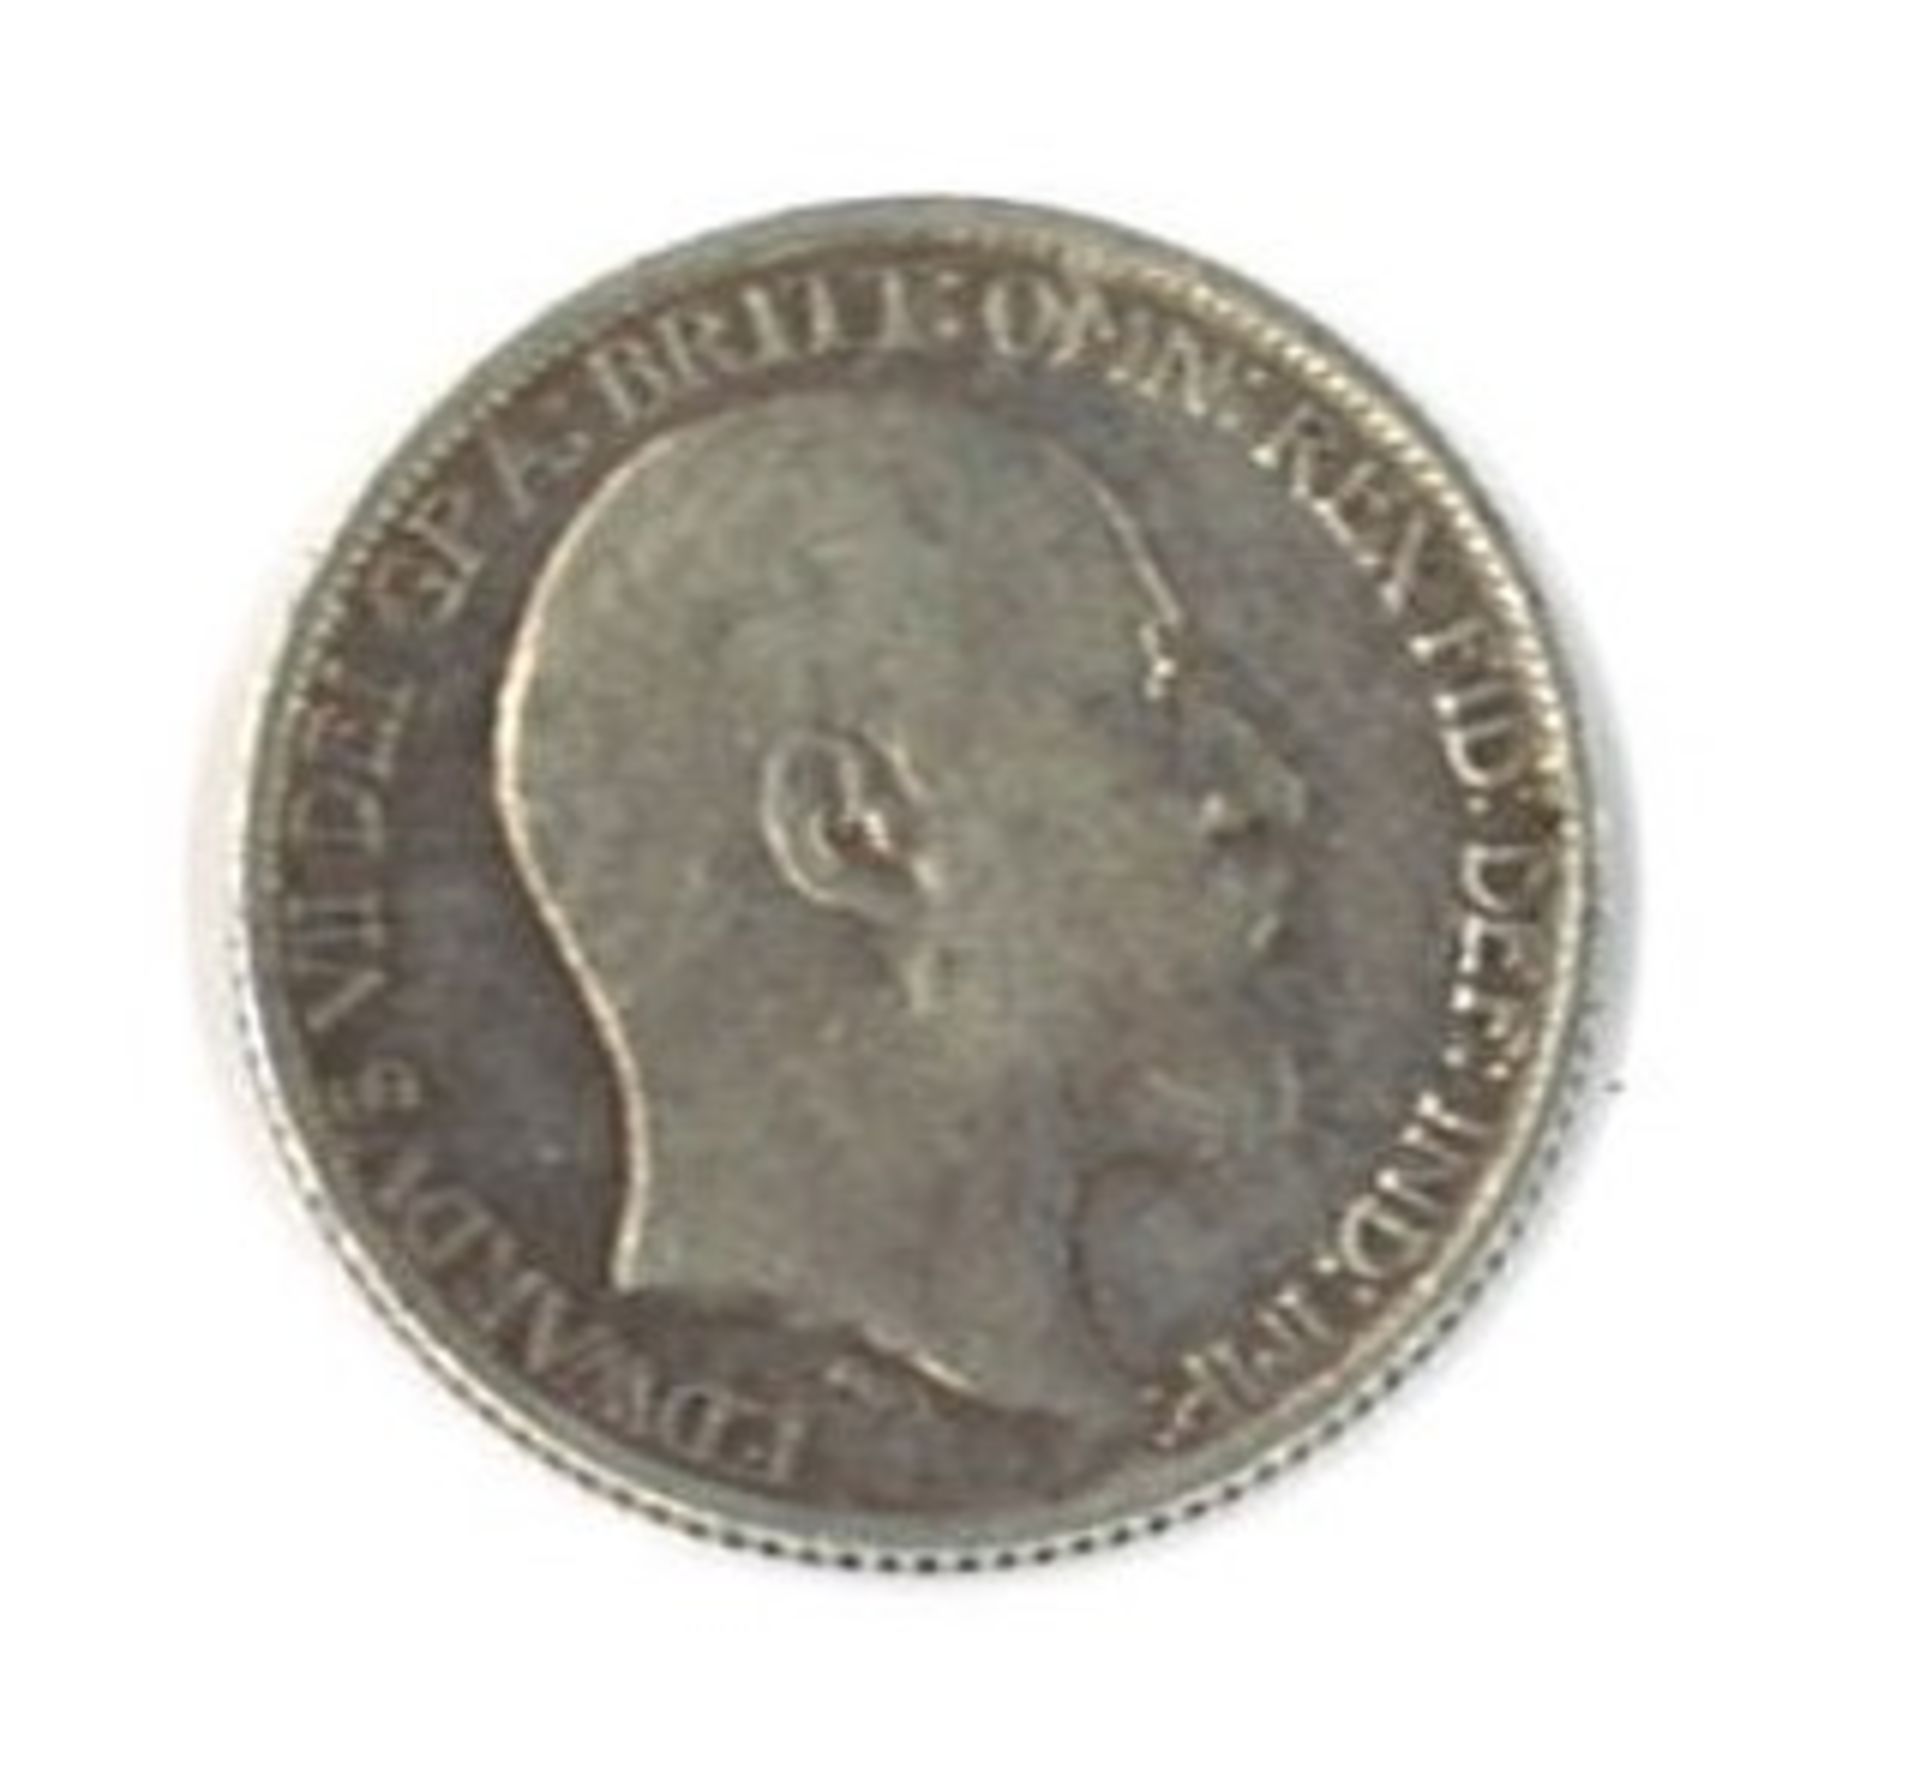 6 Pence Großbritannien "Edward VII 1901 - 1910". Zustand: ss